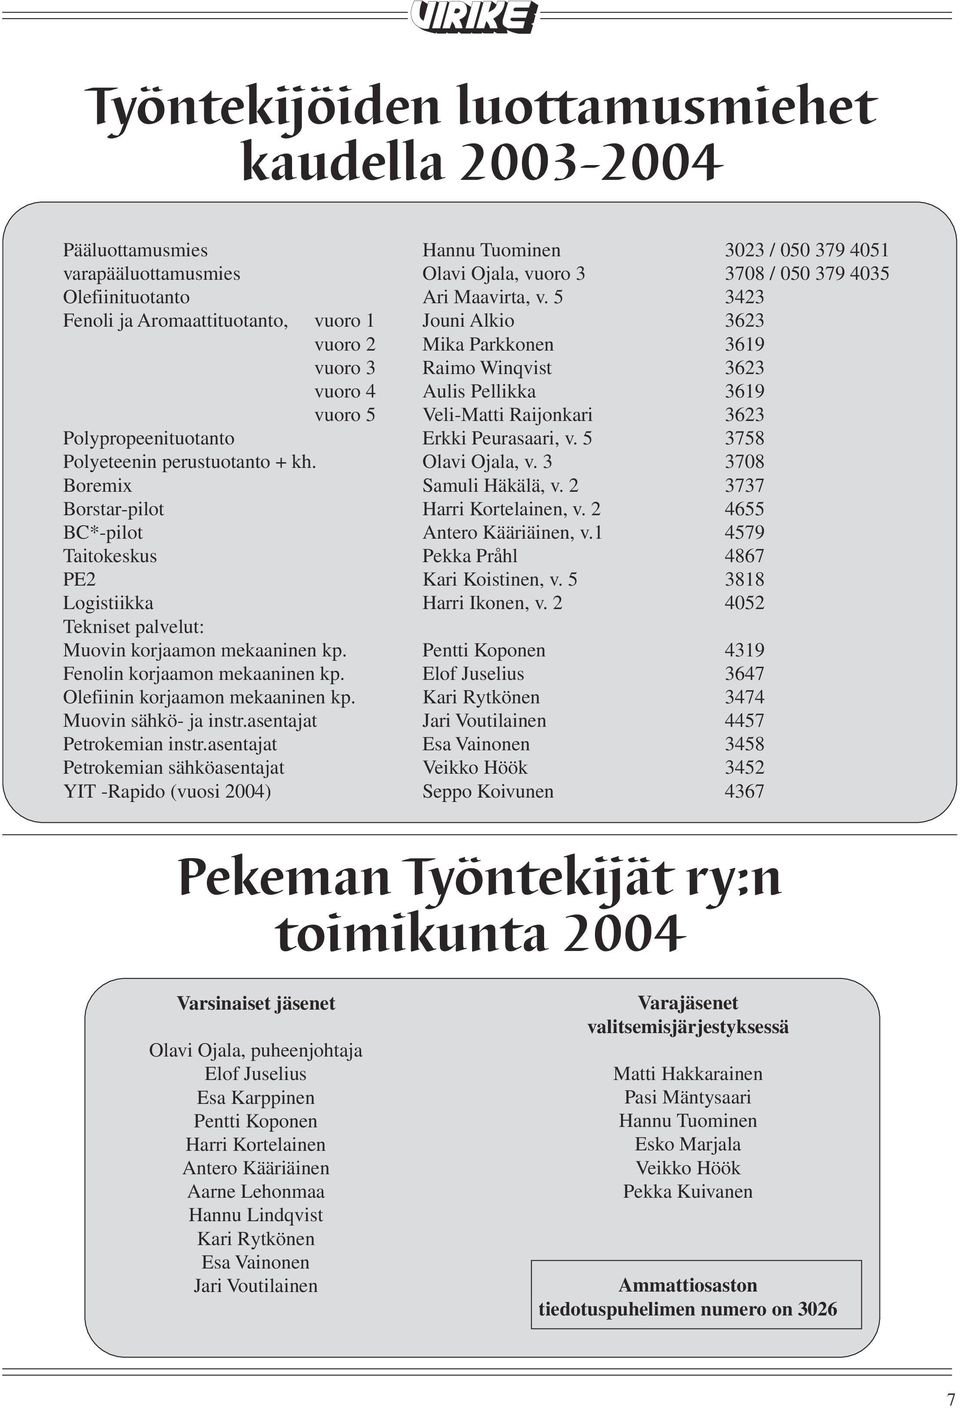 Polypropeenituotanto Erkki Peurasaari, v. 5 3758 Polyeteenin perustuotanto + kh. Olavi Ojala, v. 3 3708 Boremix Samuli Häkälä, v. 2 3737 Borstar-pilot Harri Kortelainen, v.